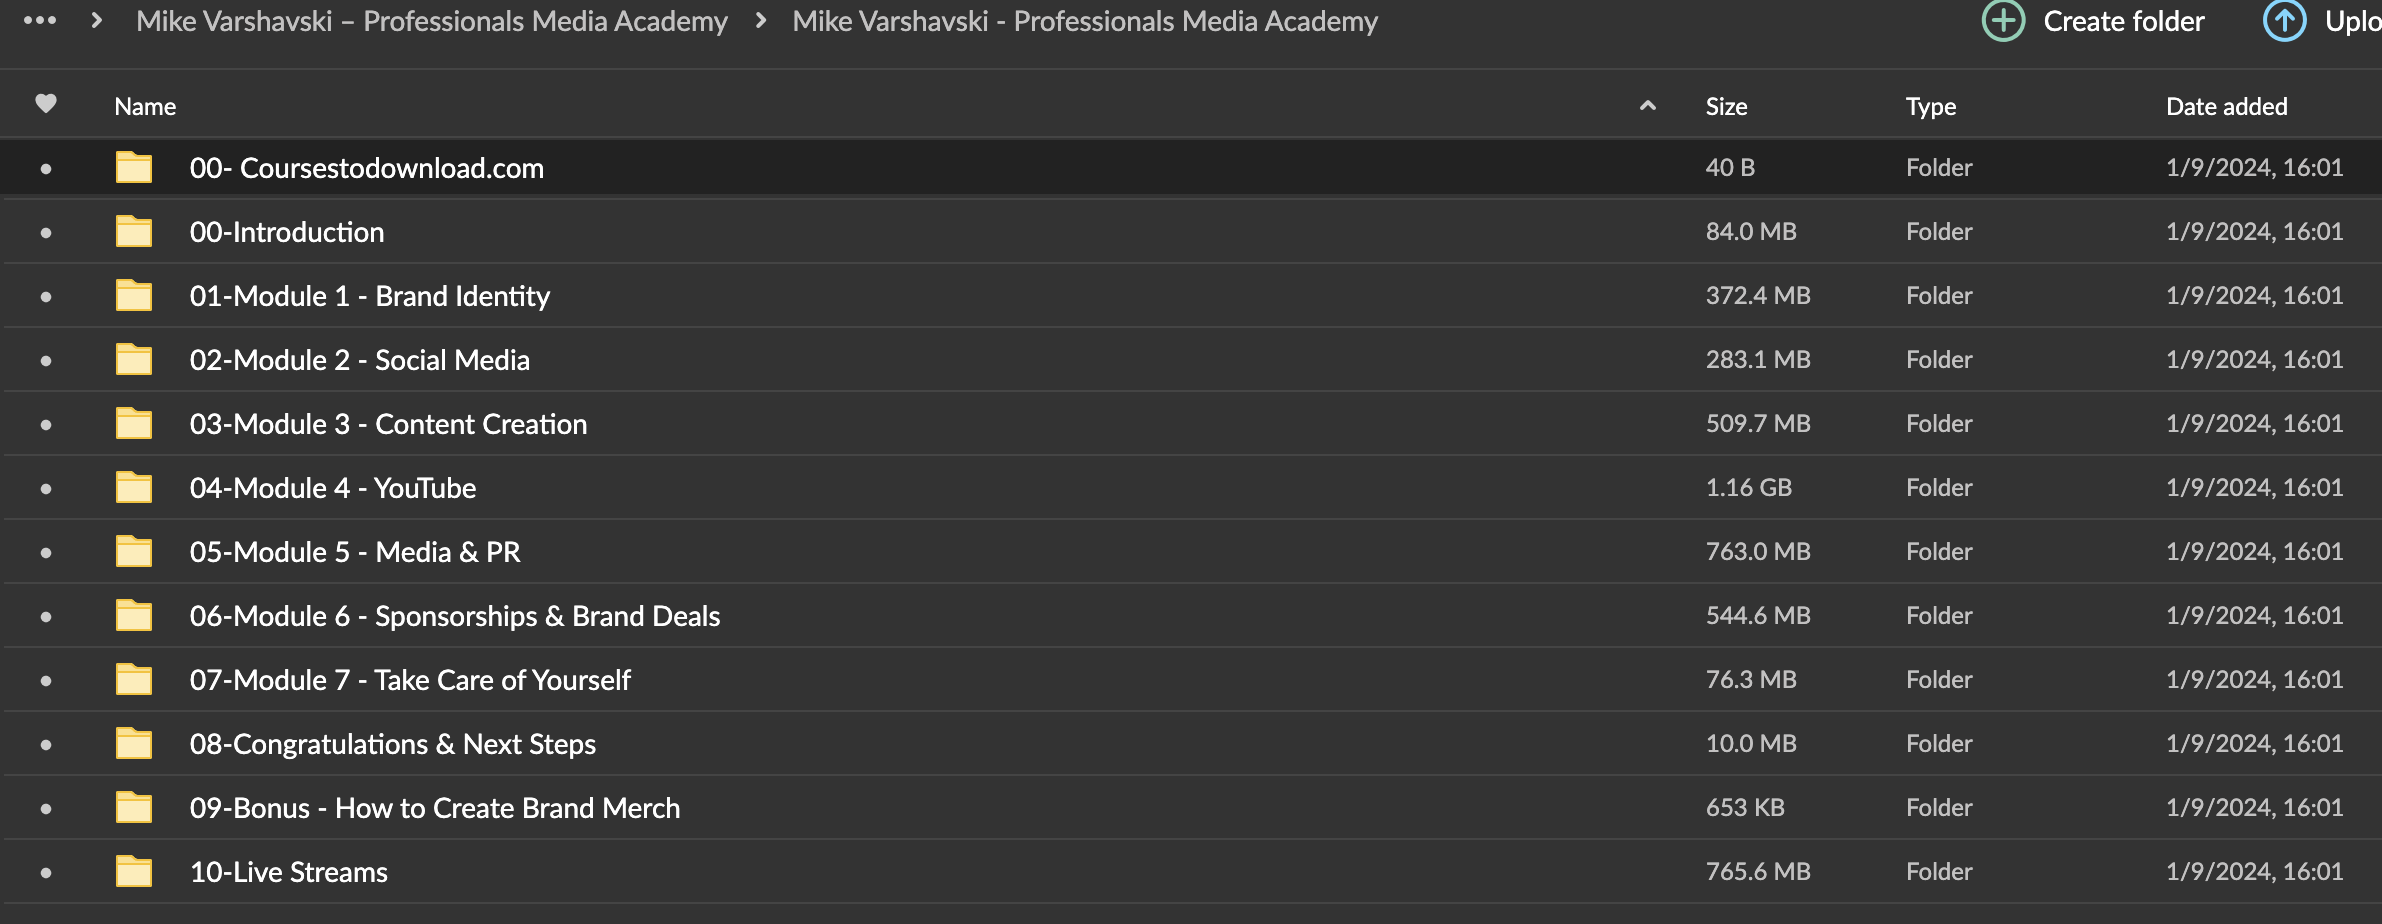 Mike Varshavski – Professionals Media Academy Download